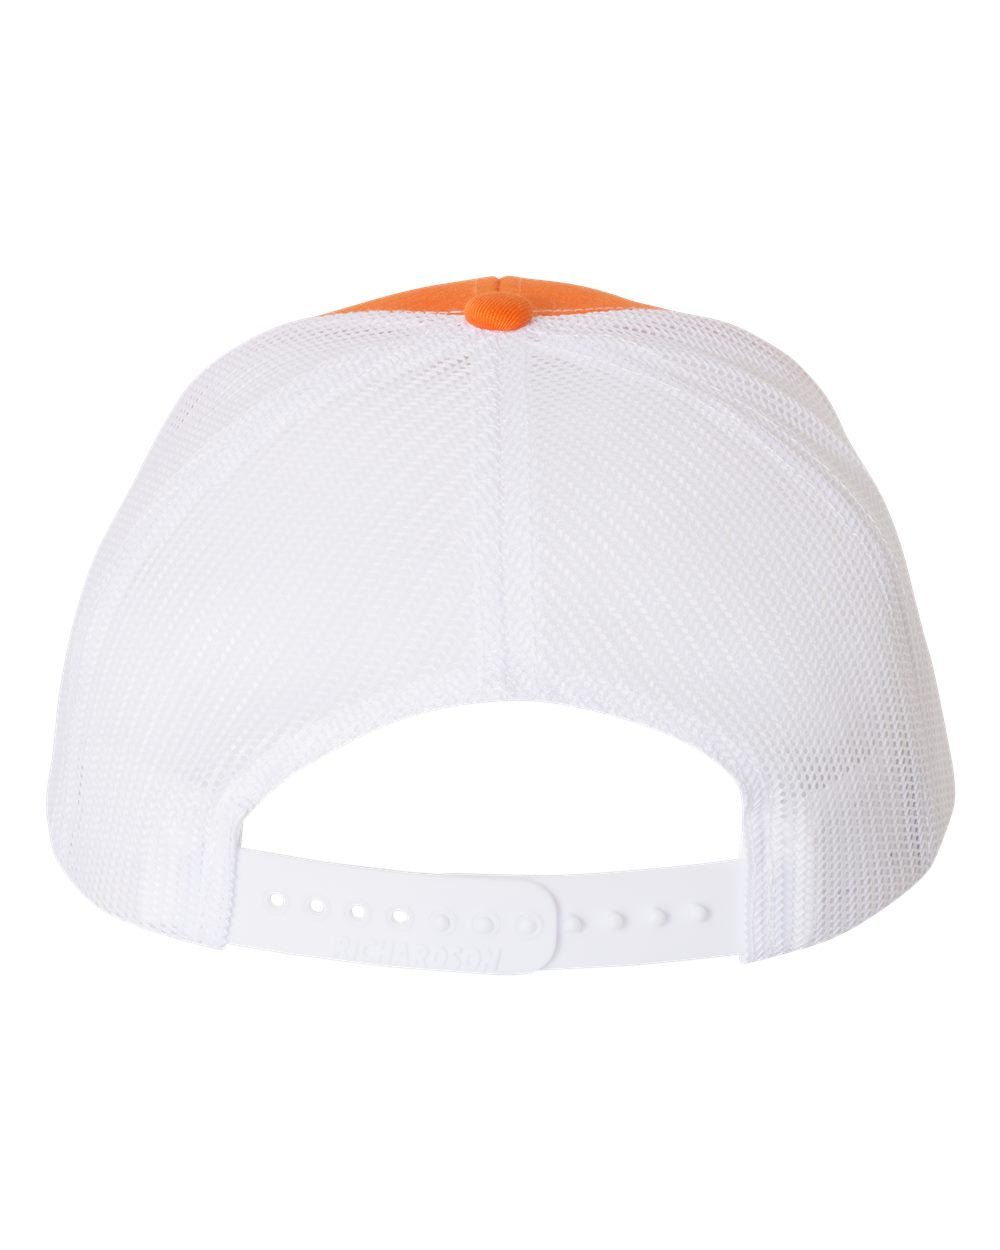 Orange PF Structured Hat